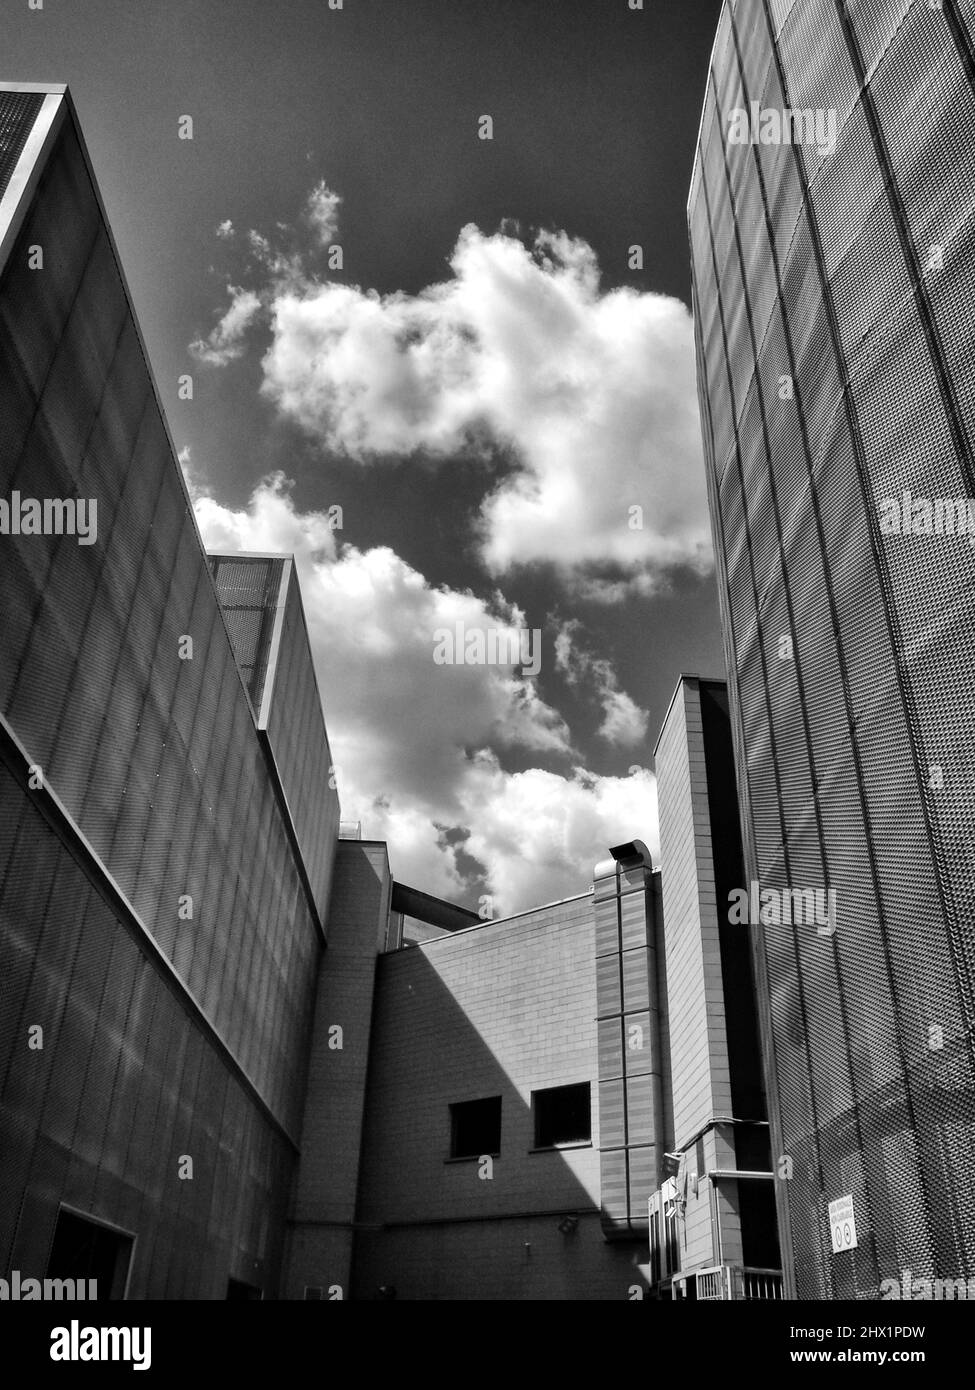 Edificio de arquitectura moderna con nubes blancas en el cielo - fotografía monocromática de arte fino Foto de stock